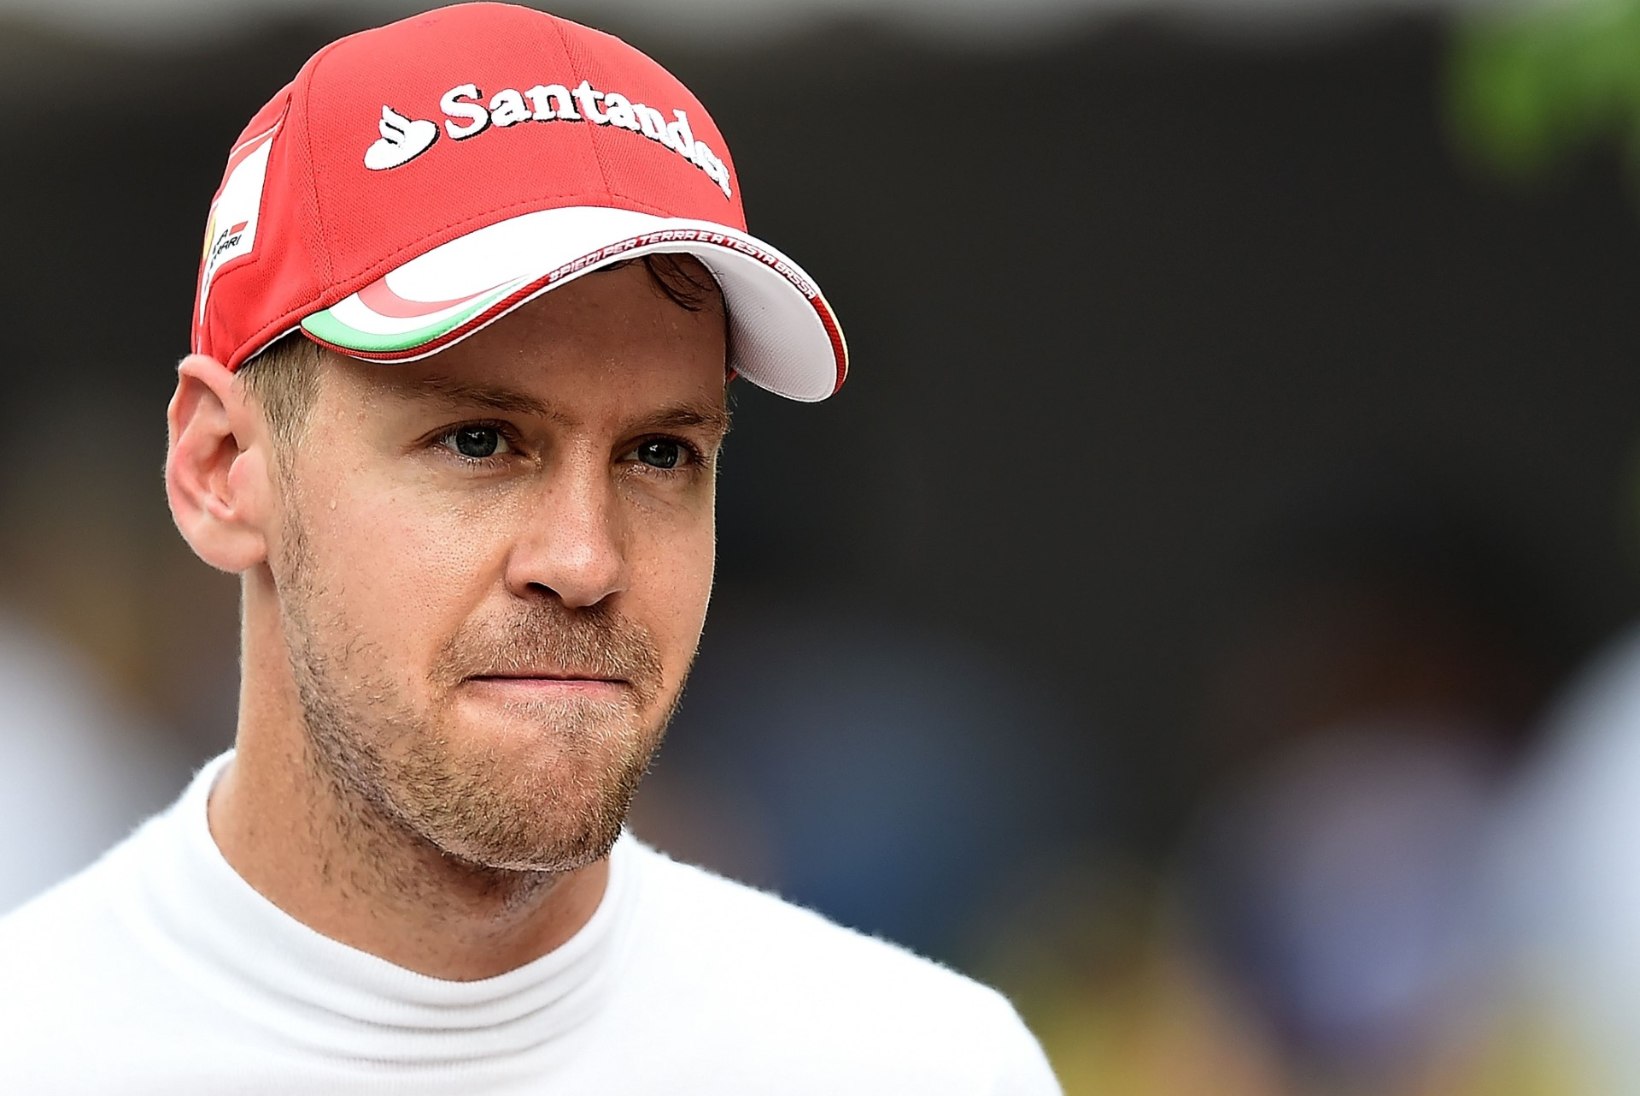 Itaalia meedia kritiseeris Sebastian Vettelit: kas sakslane on kaotanud talendi ja kiiruse?